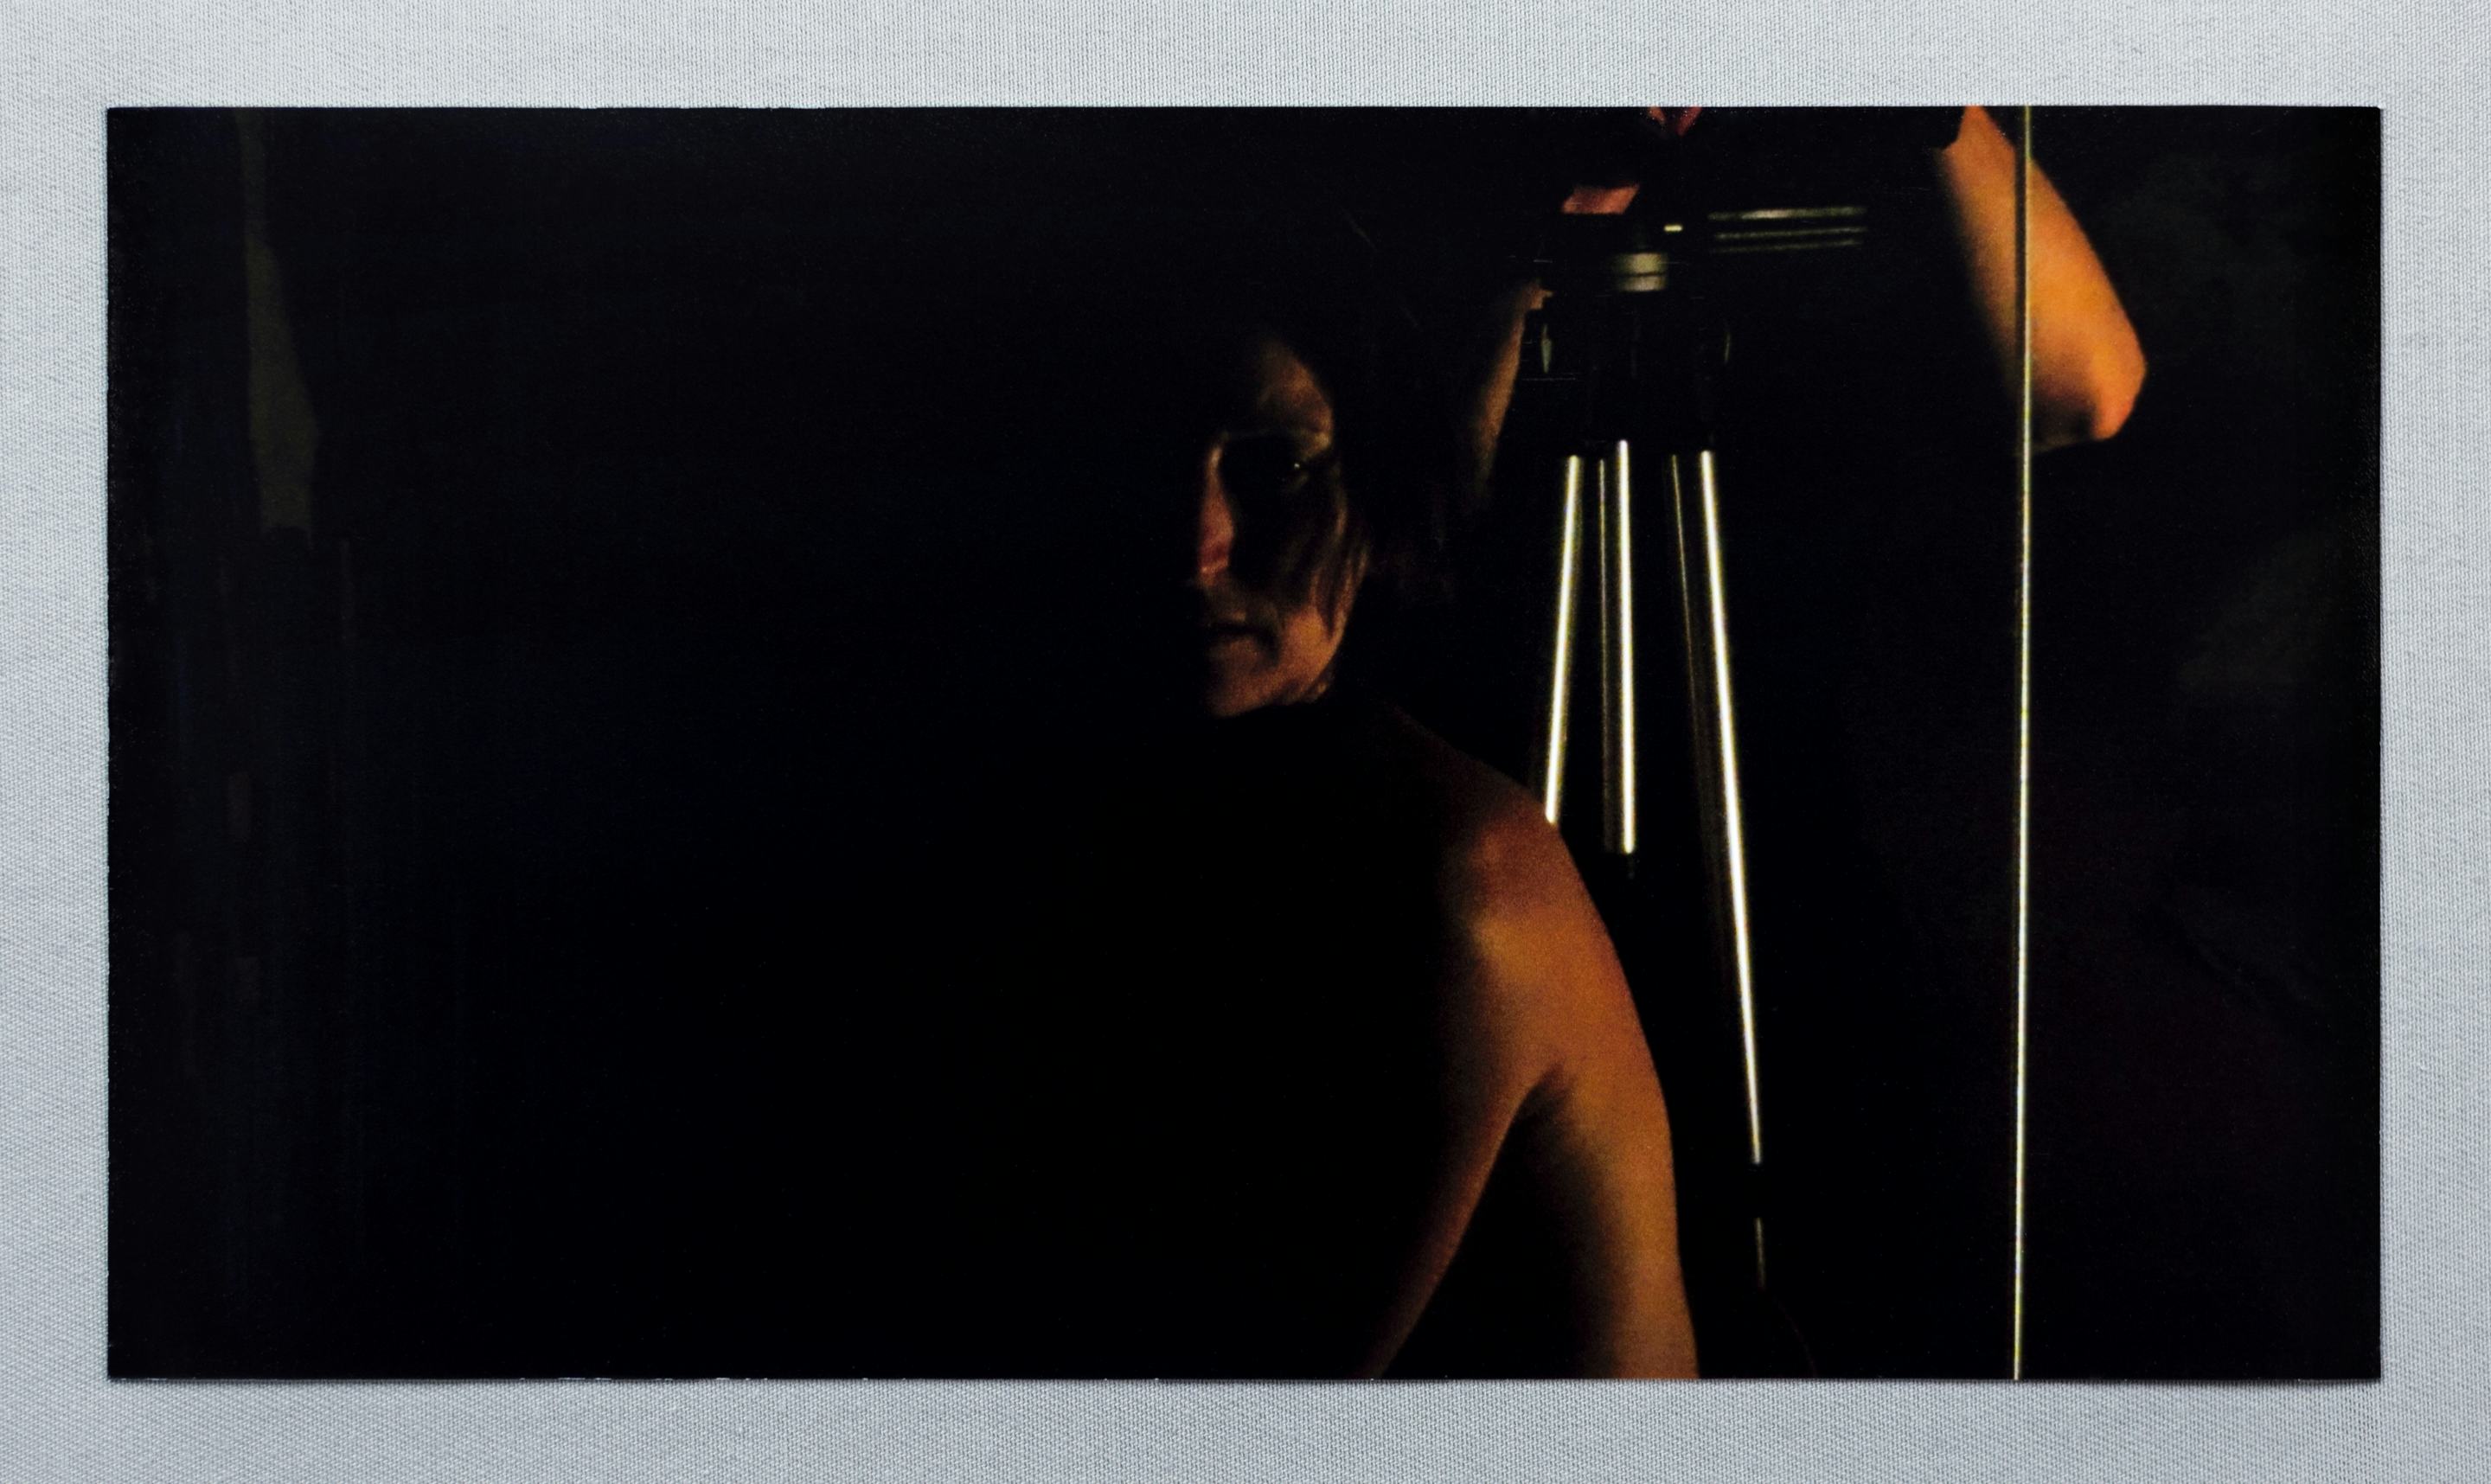 Monica Majoli - Primary Materials for Black Mirror (2009 - 2012). Archival pigment print. 5h x 10w inches.